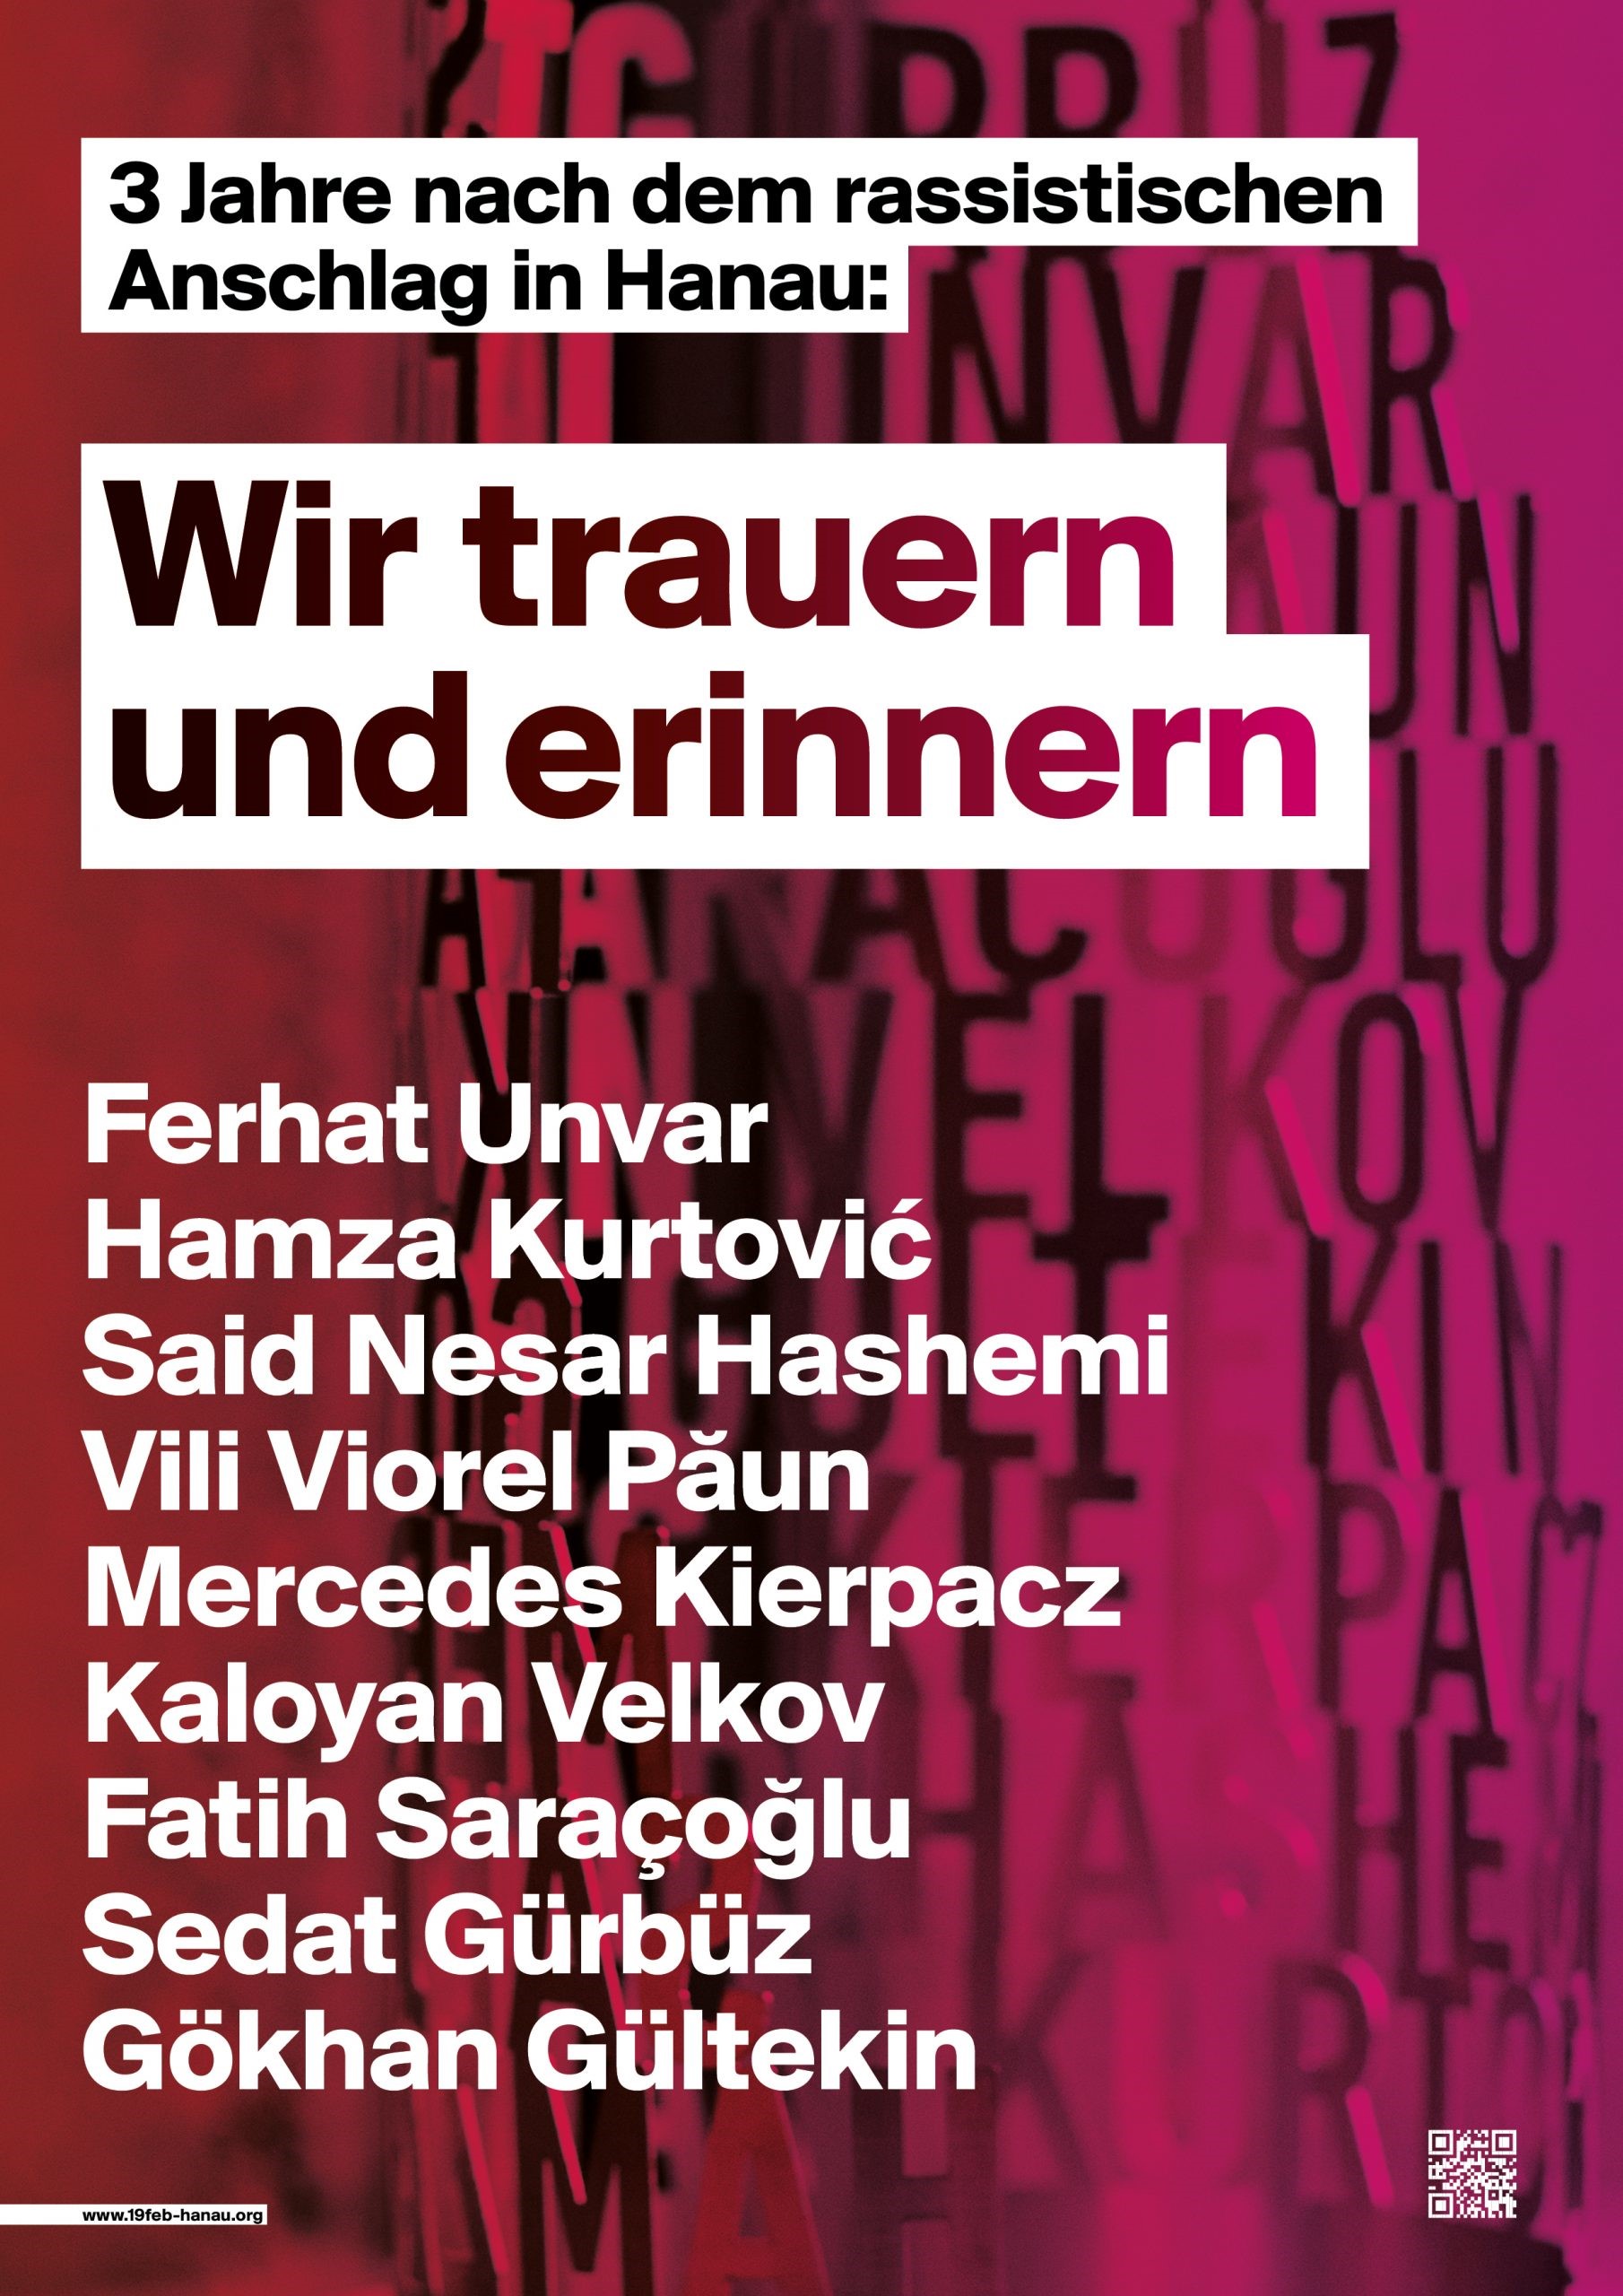 Pressemitteilung des Integrationsrates zum 3. Jahrestag des rassistischen Anschlags in Hanau